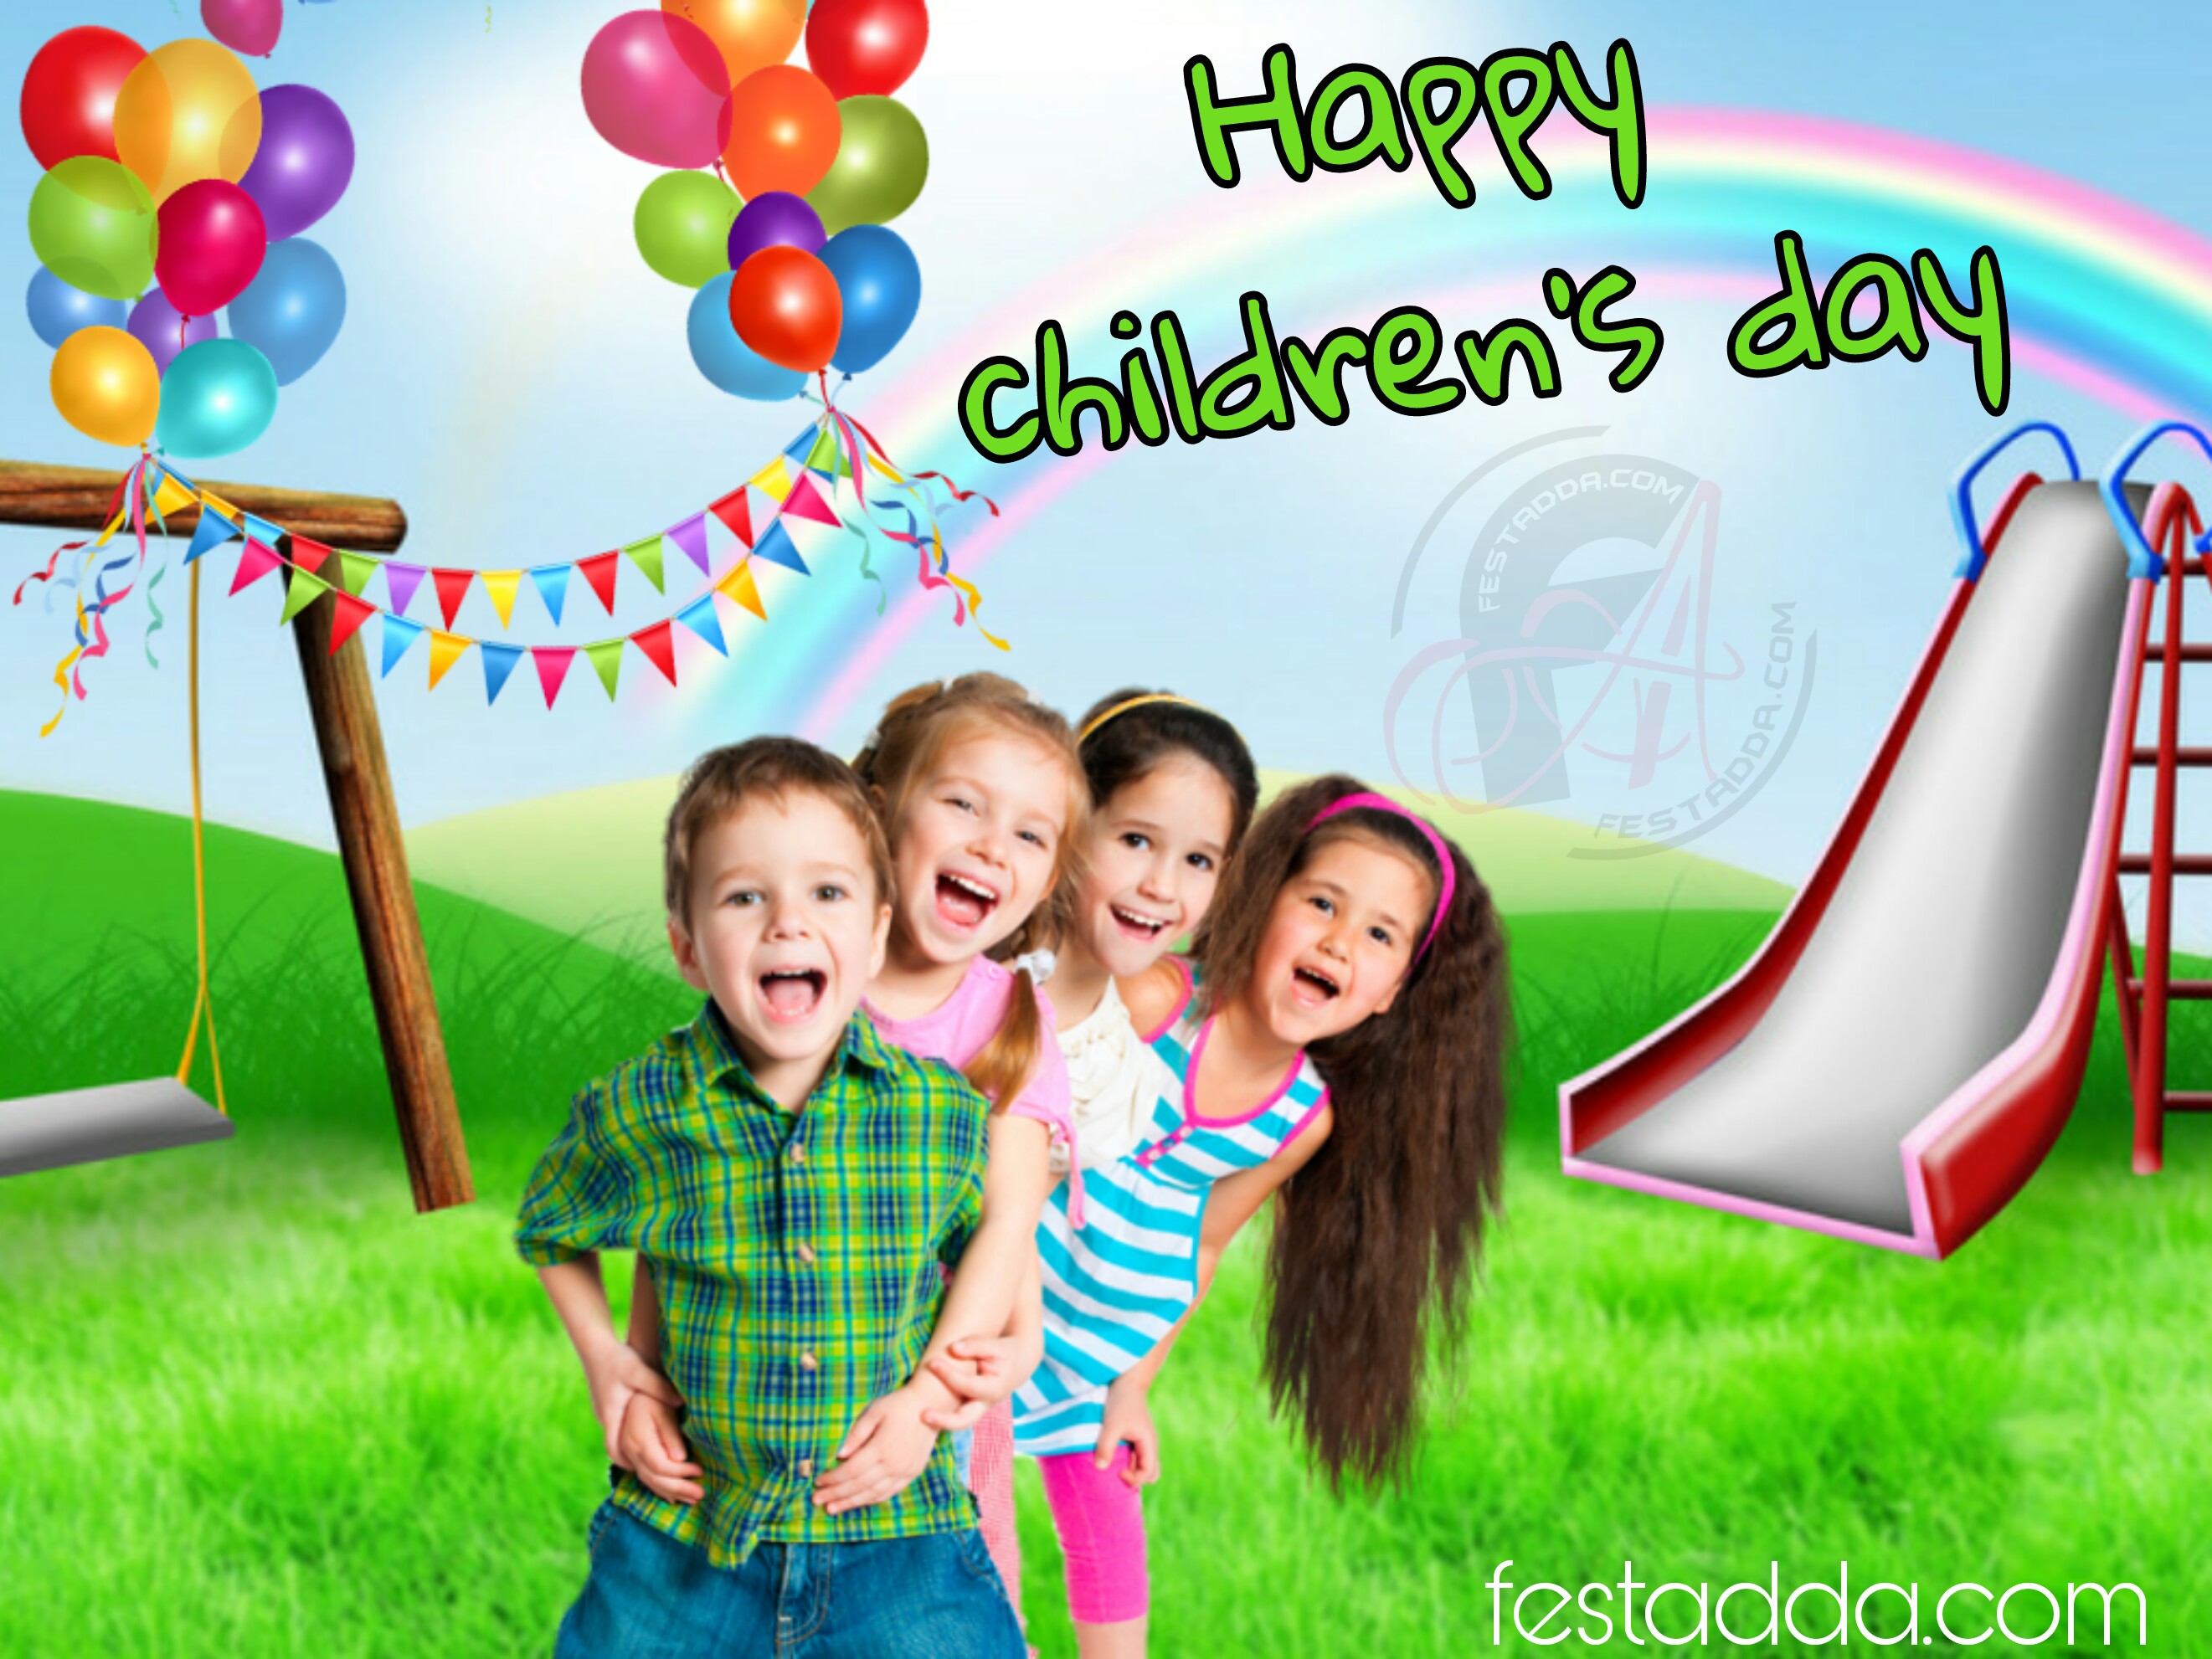 Happy Children's Day Wallpaper - School Poster Design , HD Wallpaper & Backgrounds